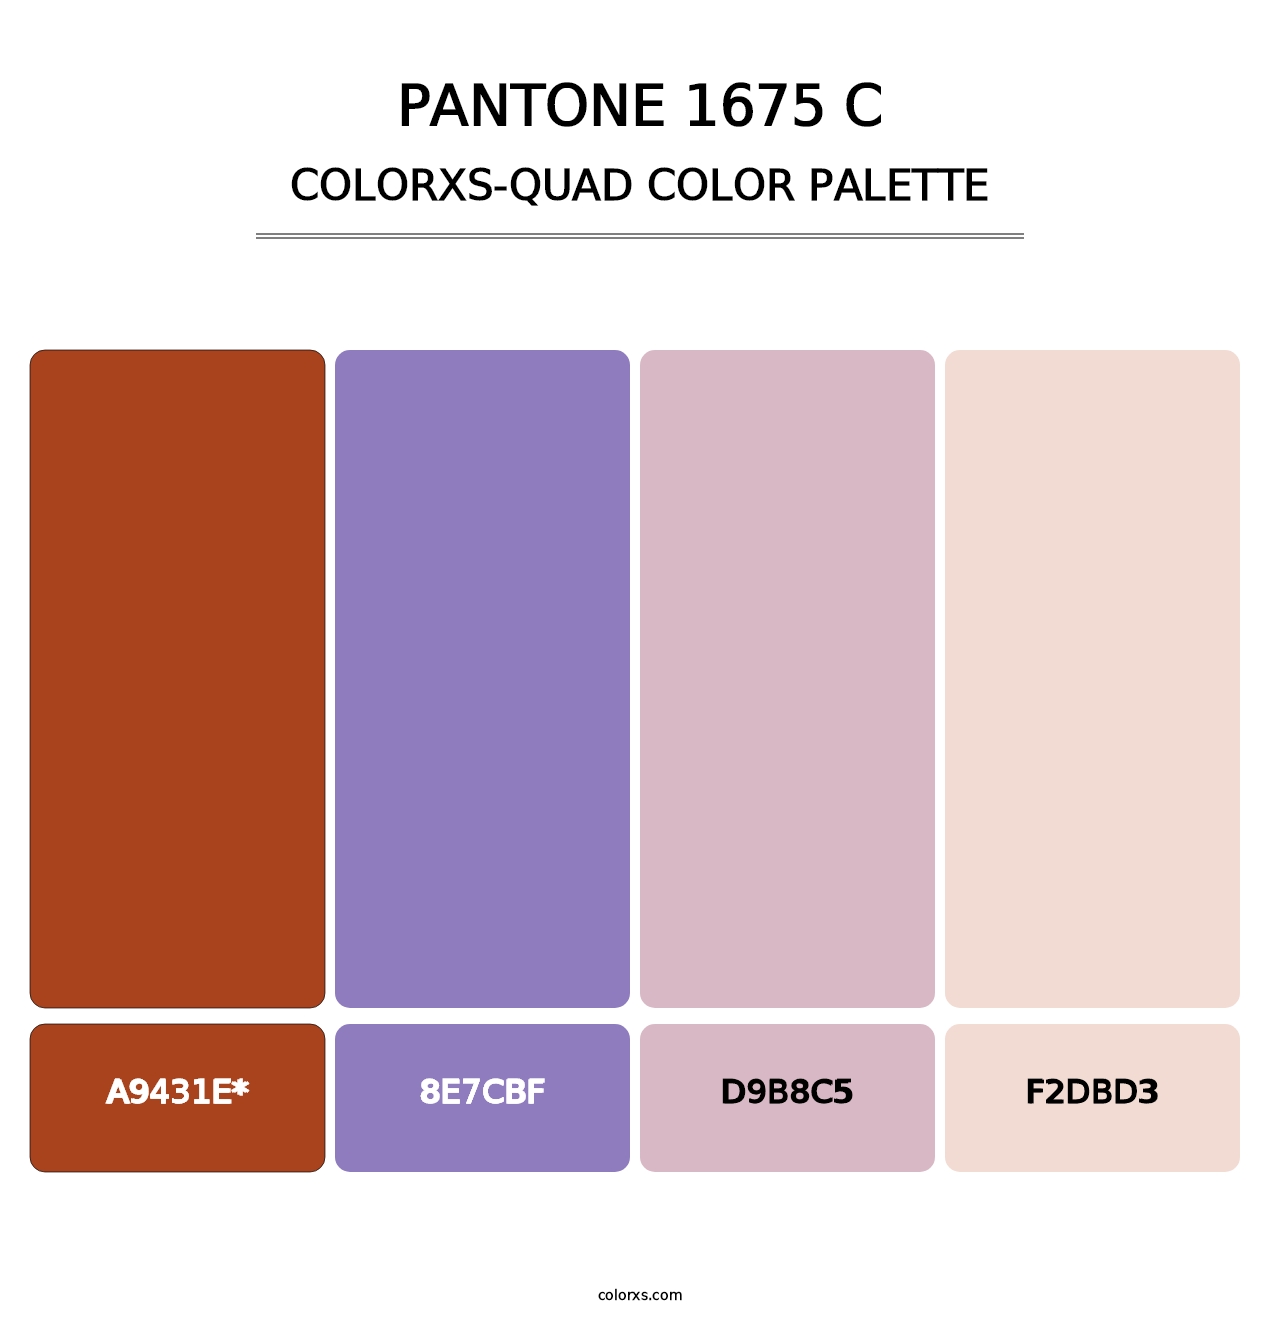 PANTONE 1675 C - Colorxs Quad Palette